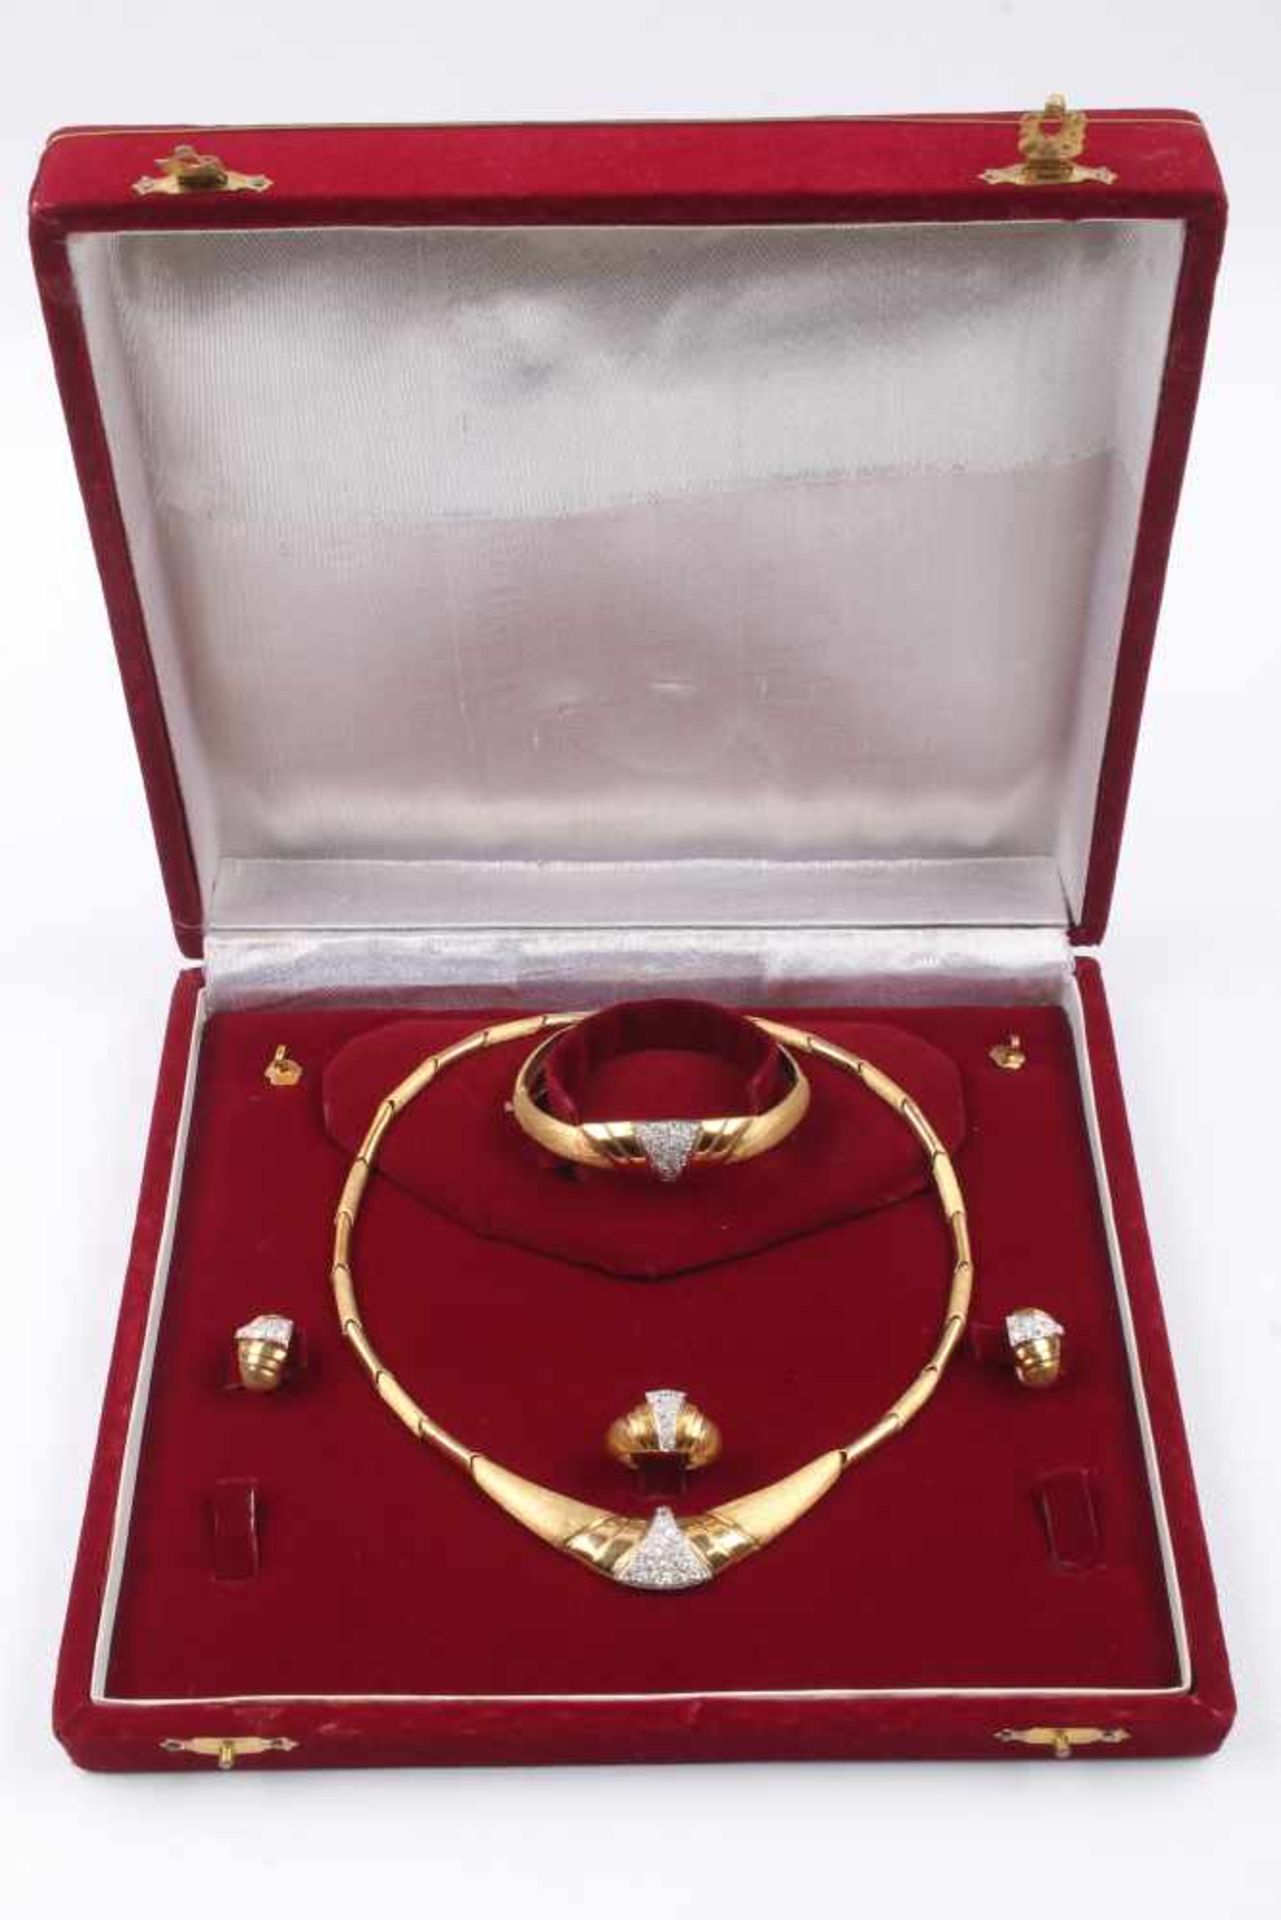 Schmuckset 750 Gold, 5-teilig, jewelry set 750 gold, 5 pieces, - Bild 2 aus 10